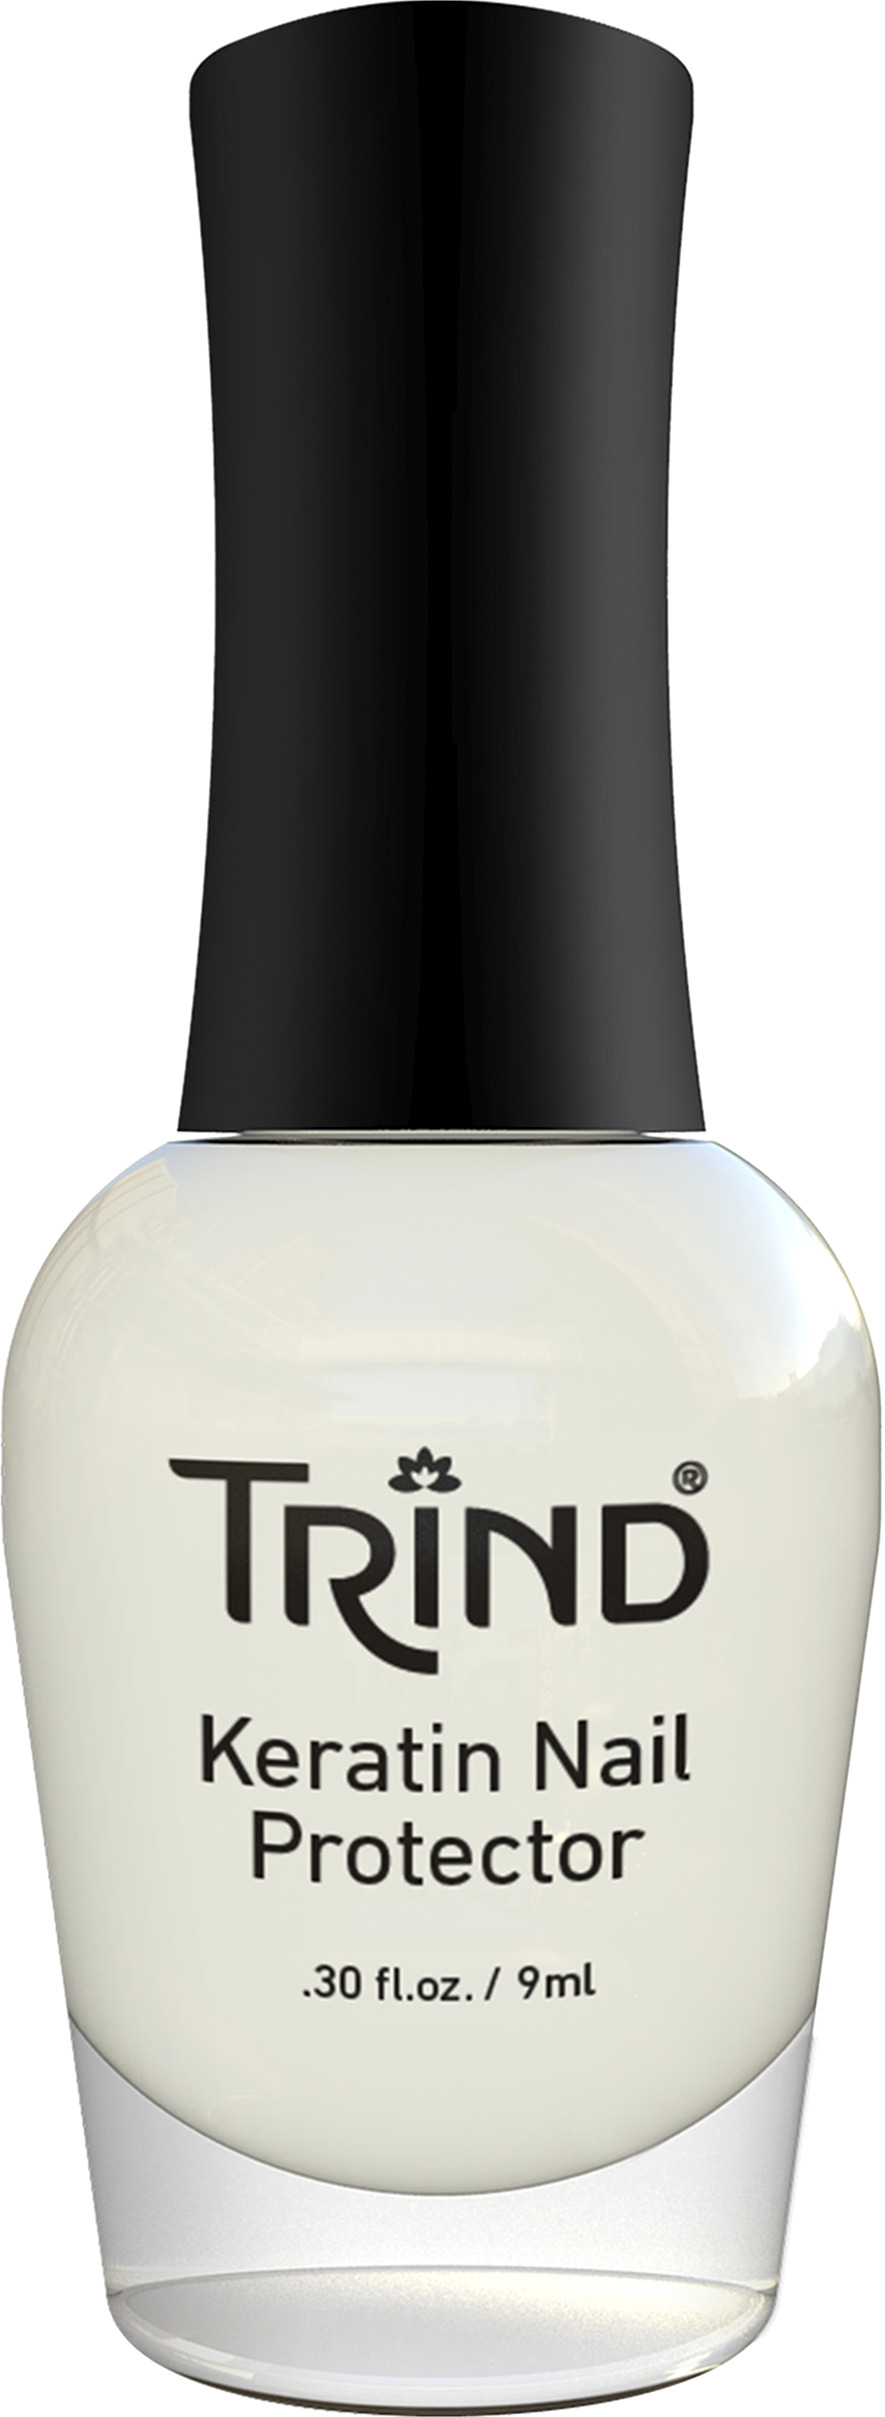 TRIND Keratin Nail Protector Base Coat 9 ml